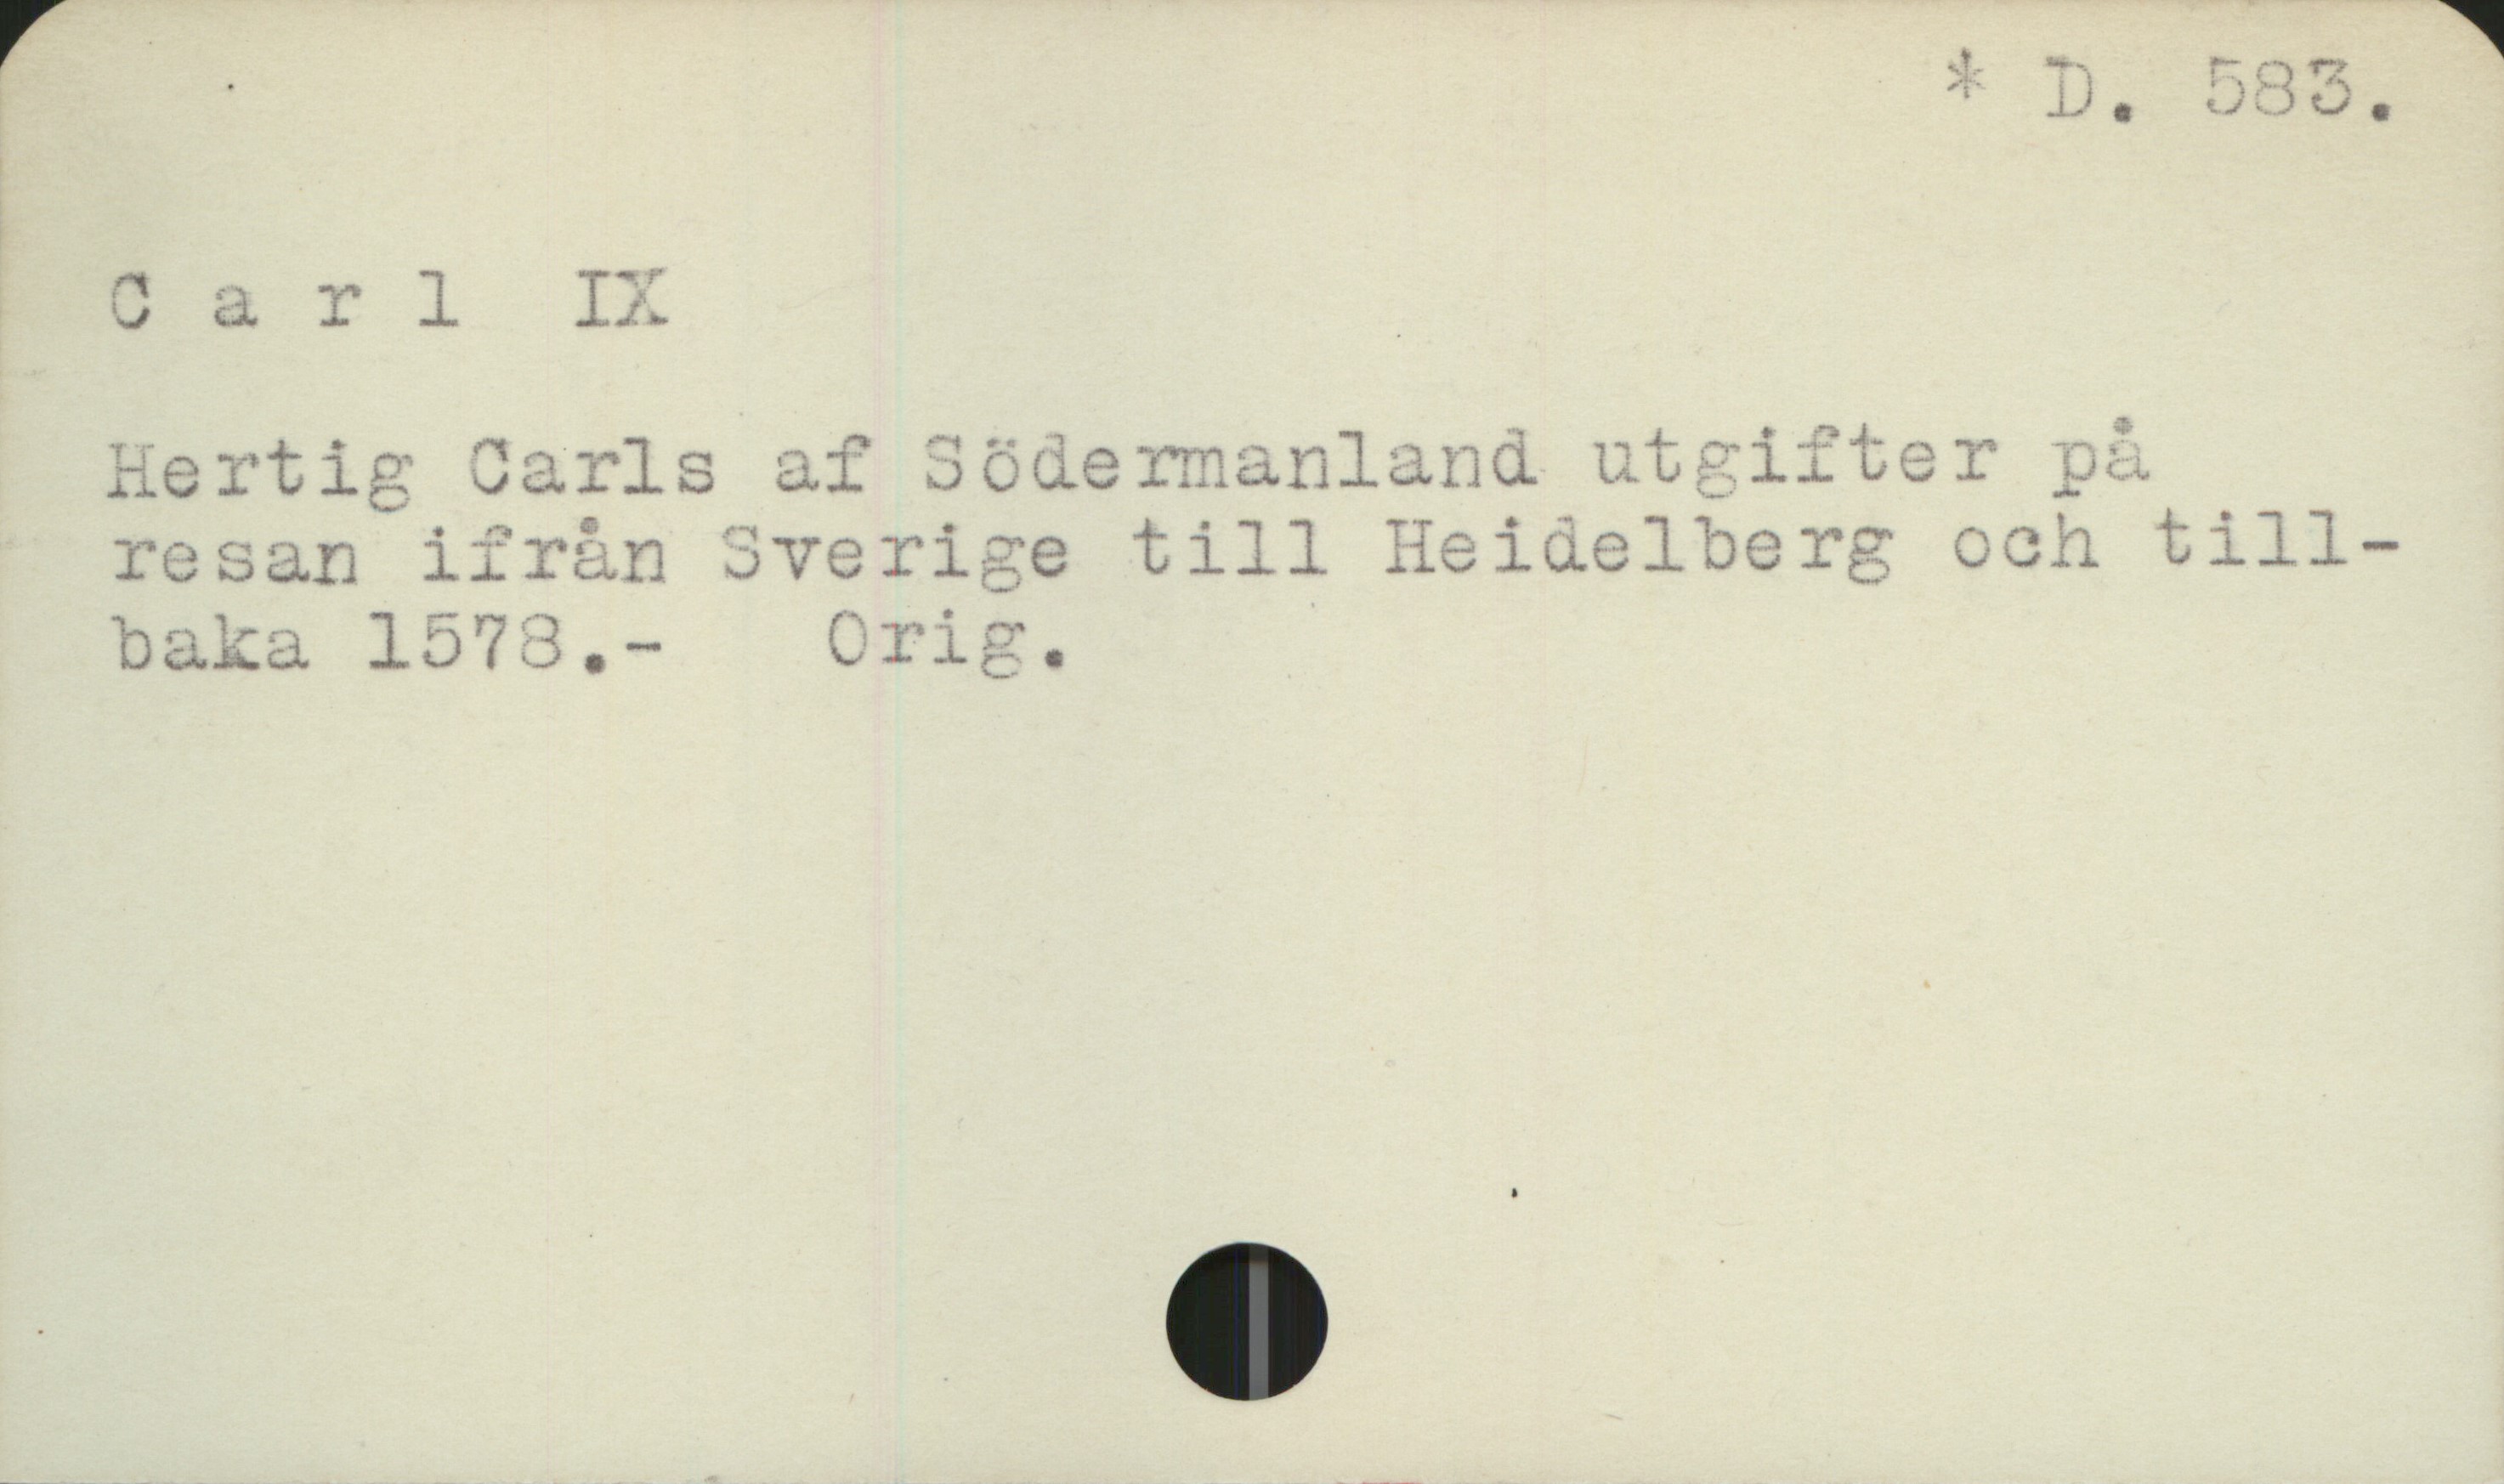  ' -3 m. 535.
^arl IX. ,
Hertig Jarls af Södermanland på
resan ifrån Sverige till Heidelberg och till-
ba&la 1573, - Orig.

